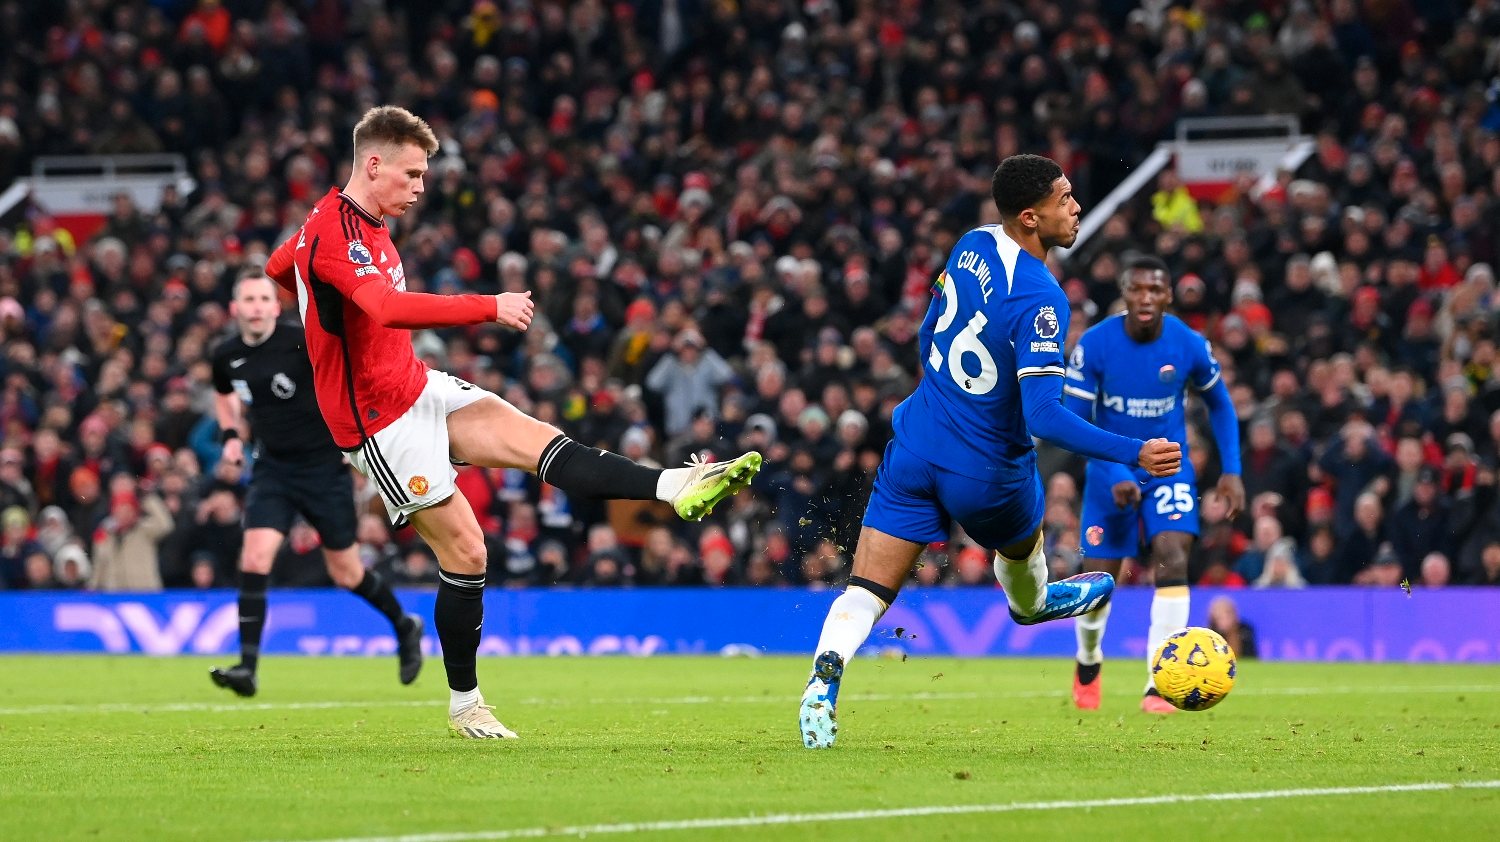 McTominay voltou a ser decisivo nas subidas à área contrária, marcando os dois golos da vitória do Manchester United frente ao Chelsea em Old Trafford